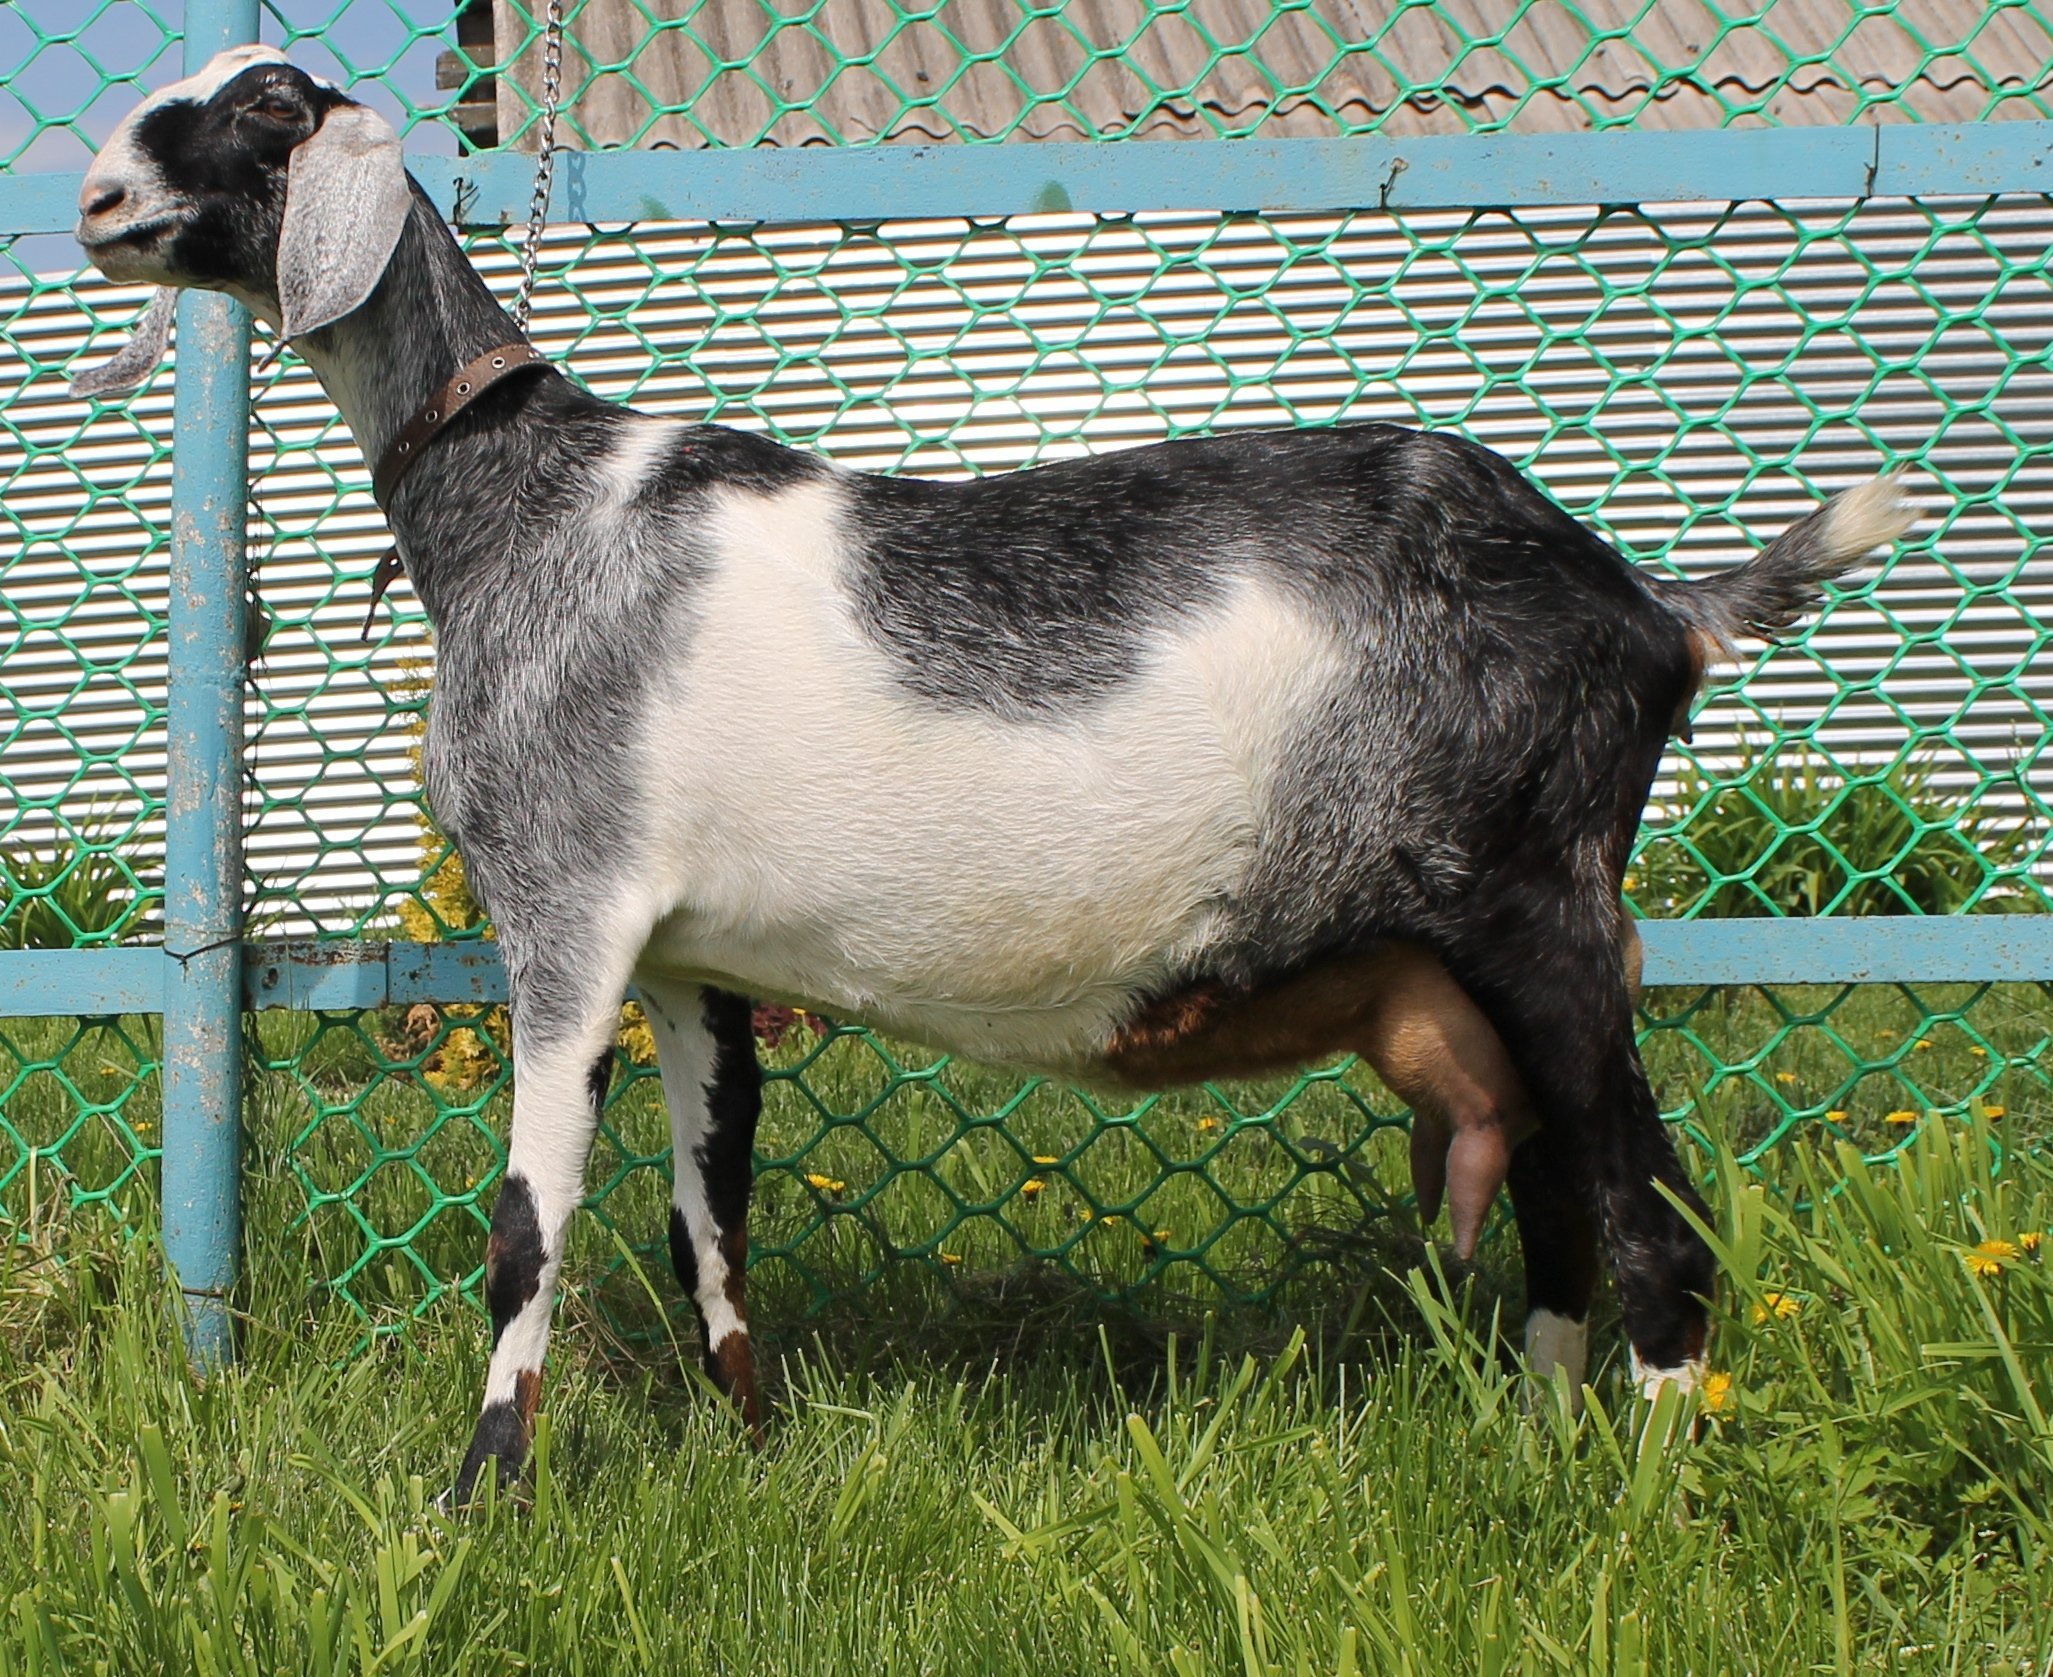 Как определить породу козы по фото